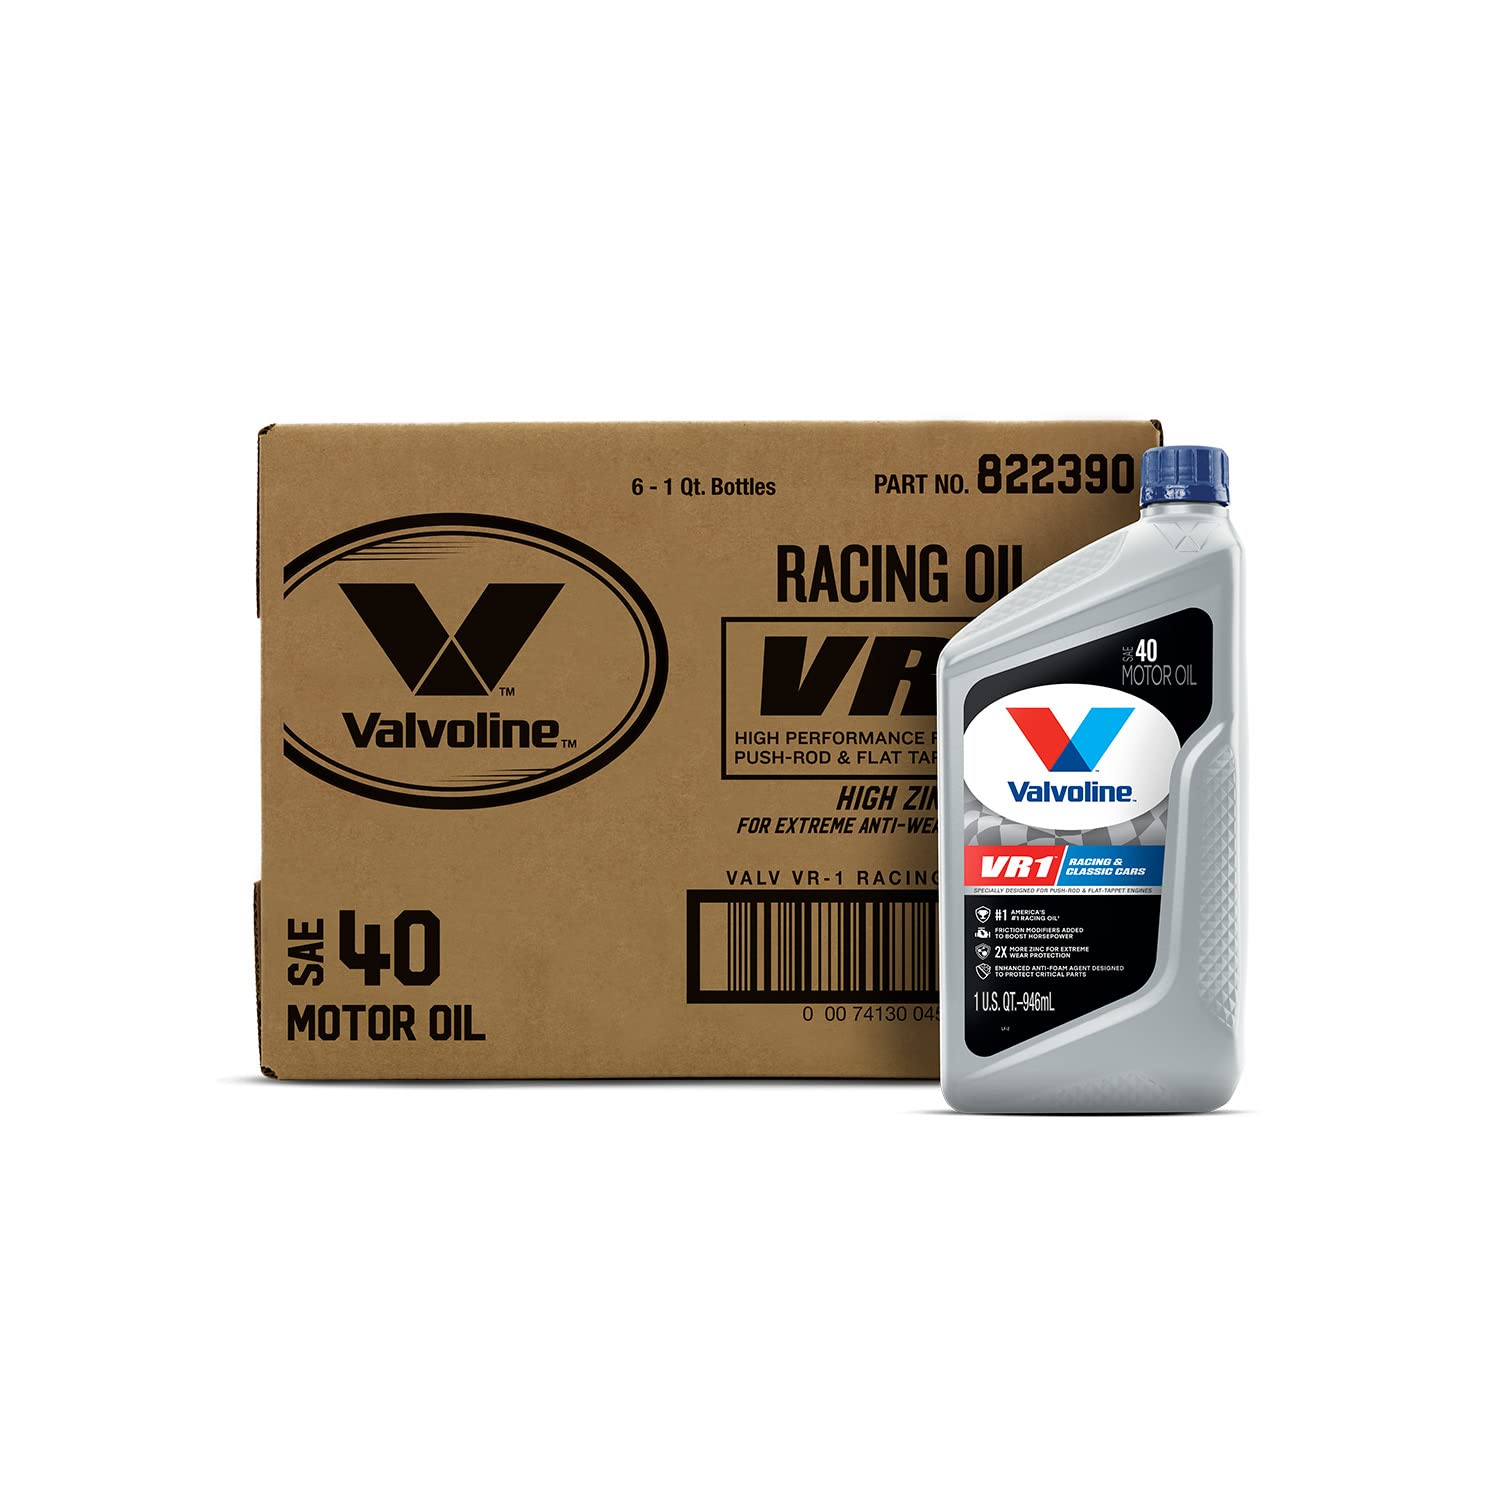 Valvoline VR1 Racing SAE 40 Motor Oil 1 QT, Case of 6  - Like New